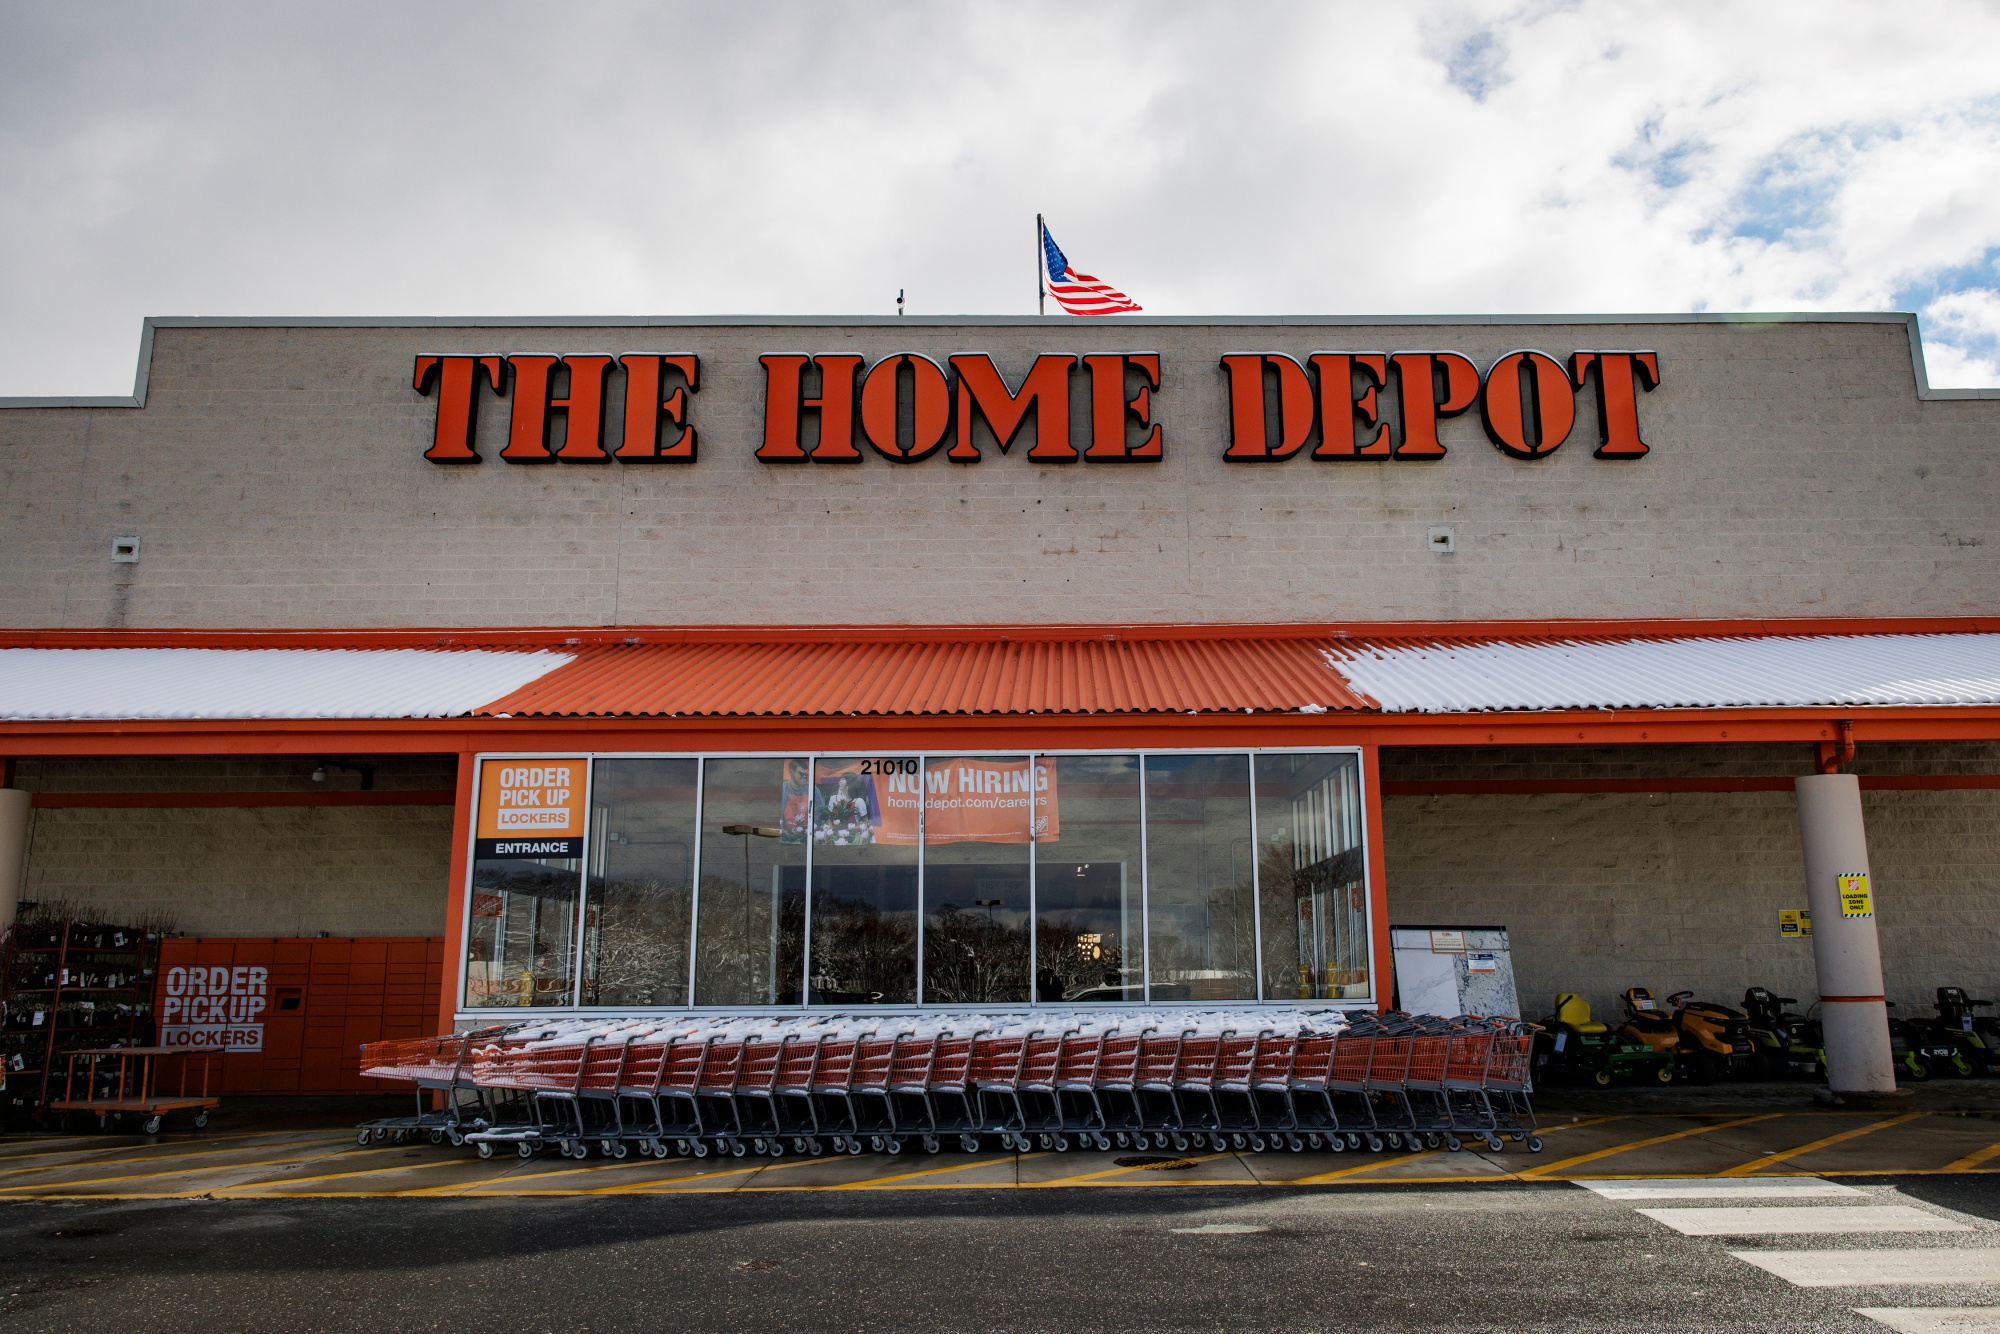 Home Depot apresenta queda nas vendas e fica abaixo das projeções -  Mercado&Consumo